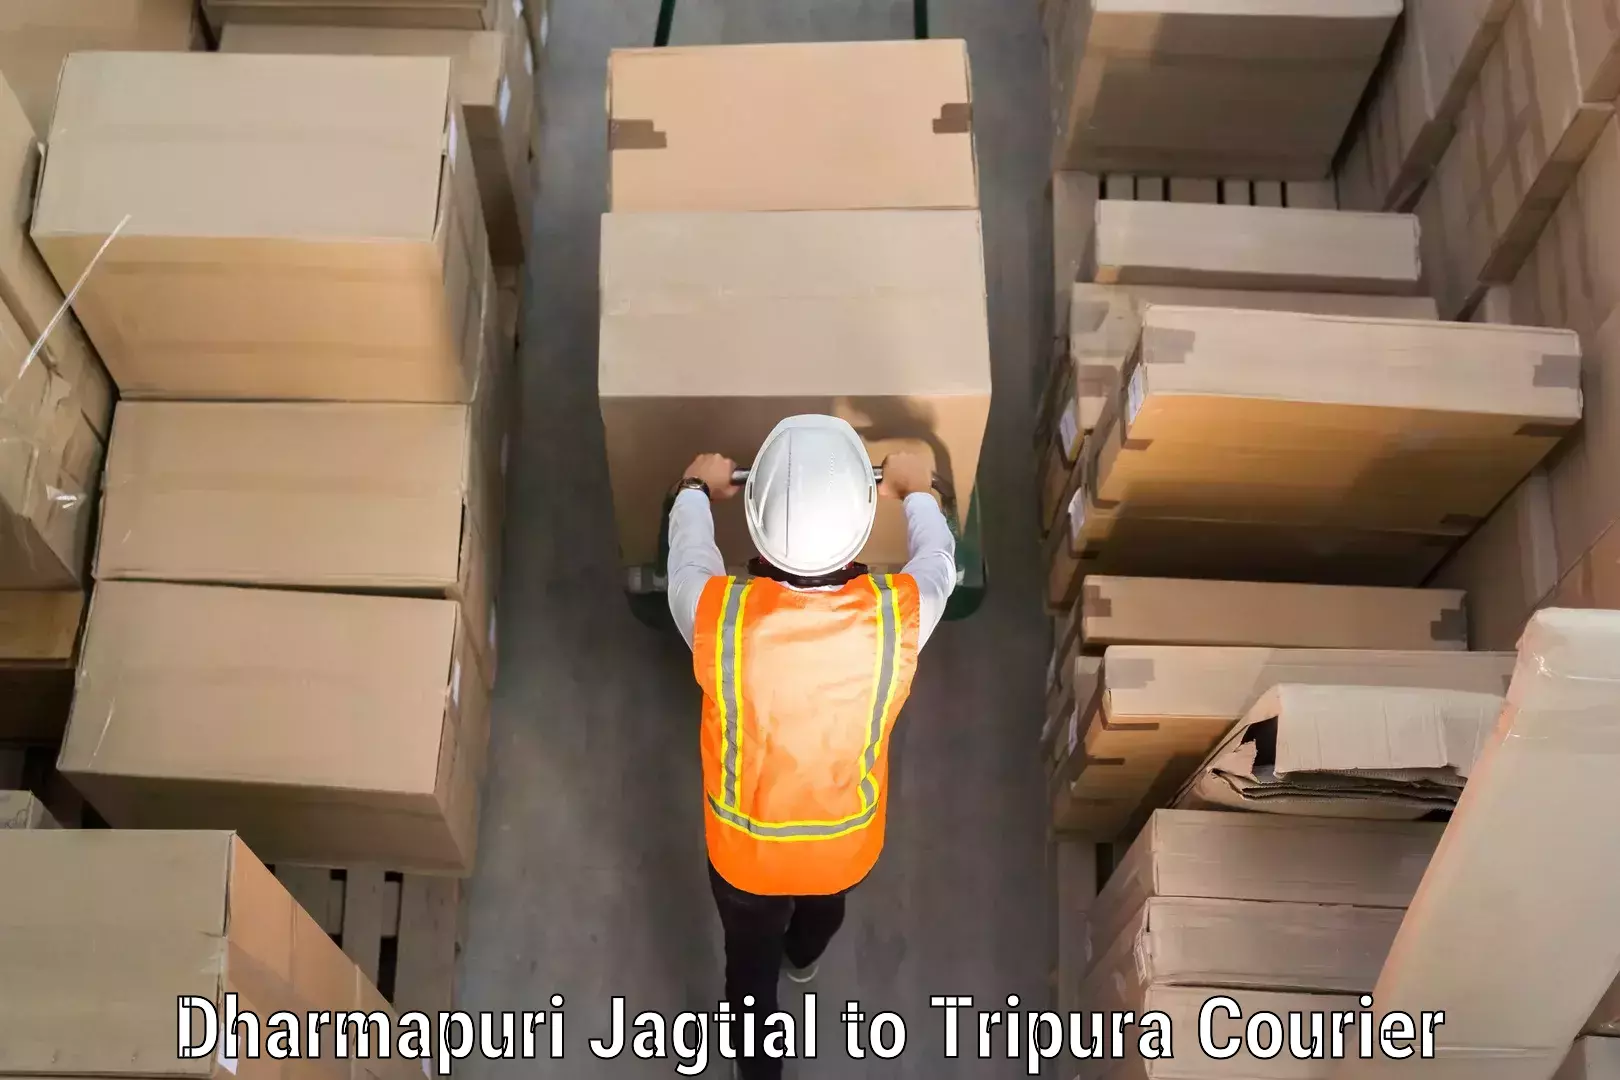 Luggage delivery system Dharmapuri Jagtial to Bishalgarh